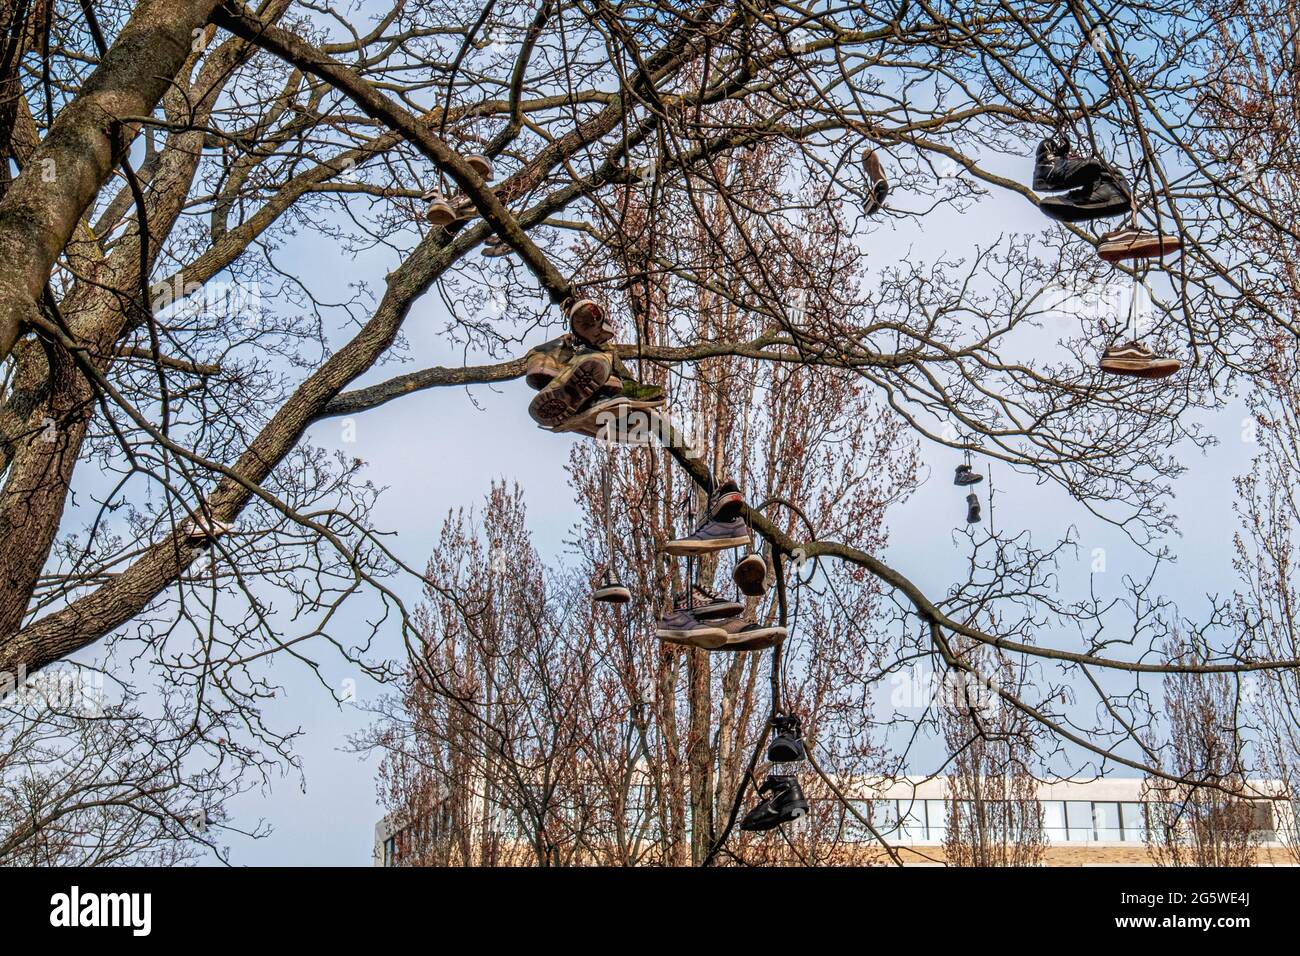 Schuhe & Sportschuhe in Berlin-Mitte im Baum aufgehängt Stockfotografie -  Alamy